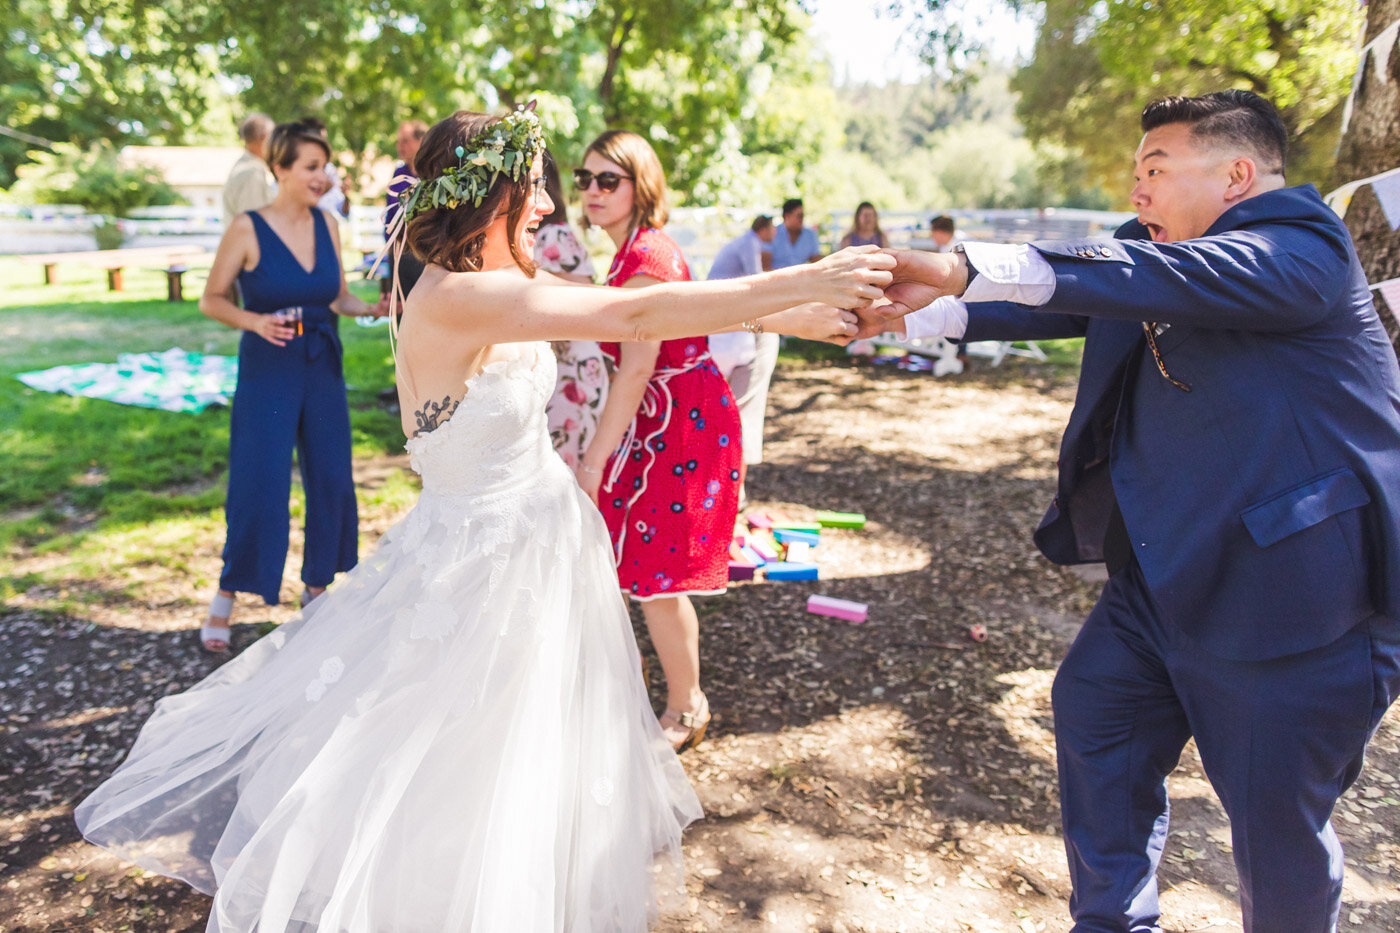 bride-getting-twirled-by-wedding-guest